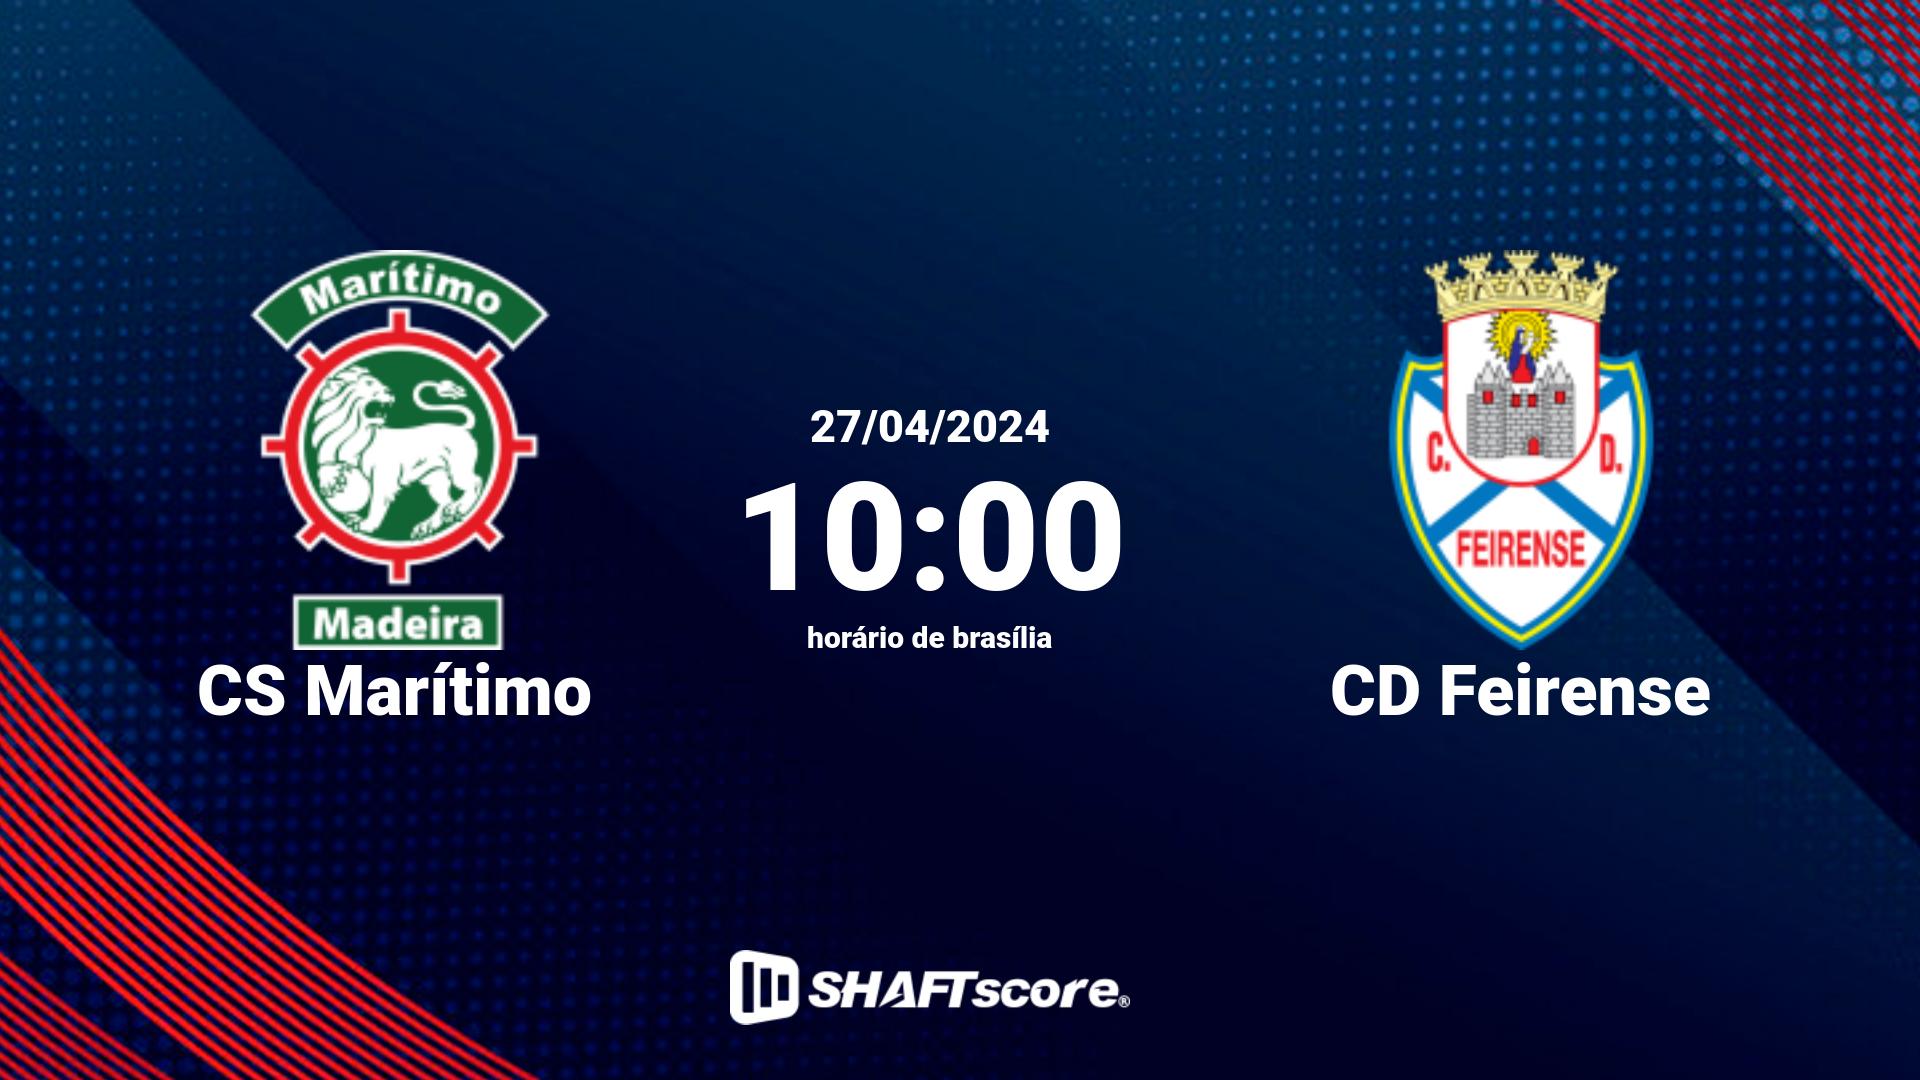 Estatísticas do jogo CS Marítimo vs CD Feirense 27.04 10:00